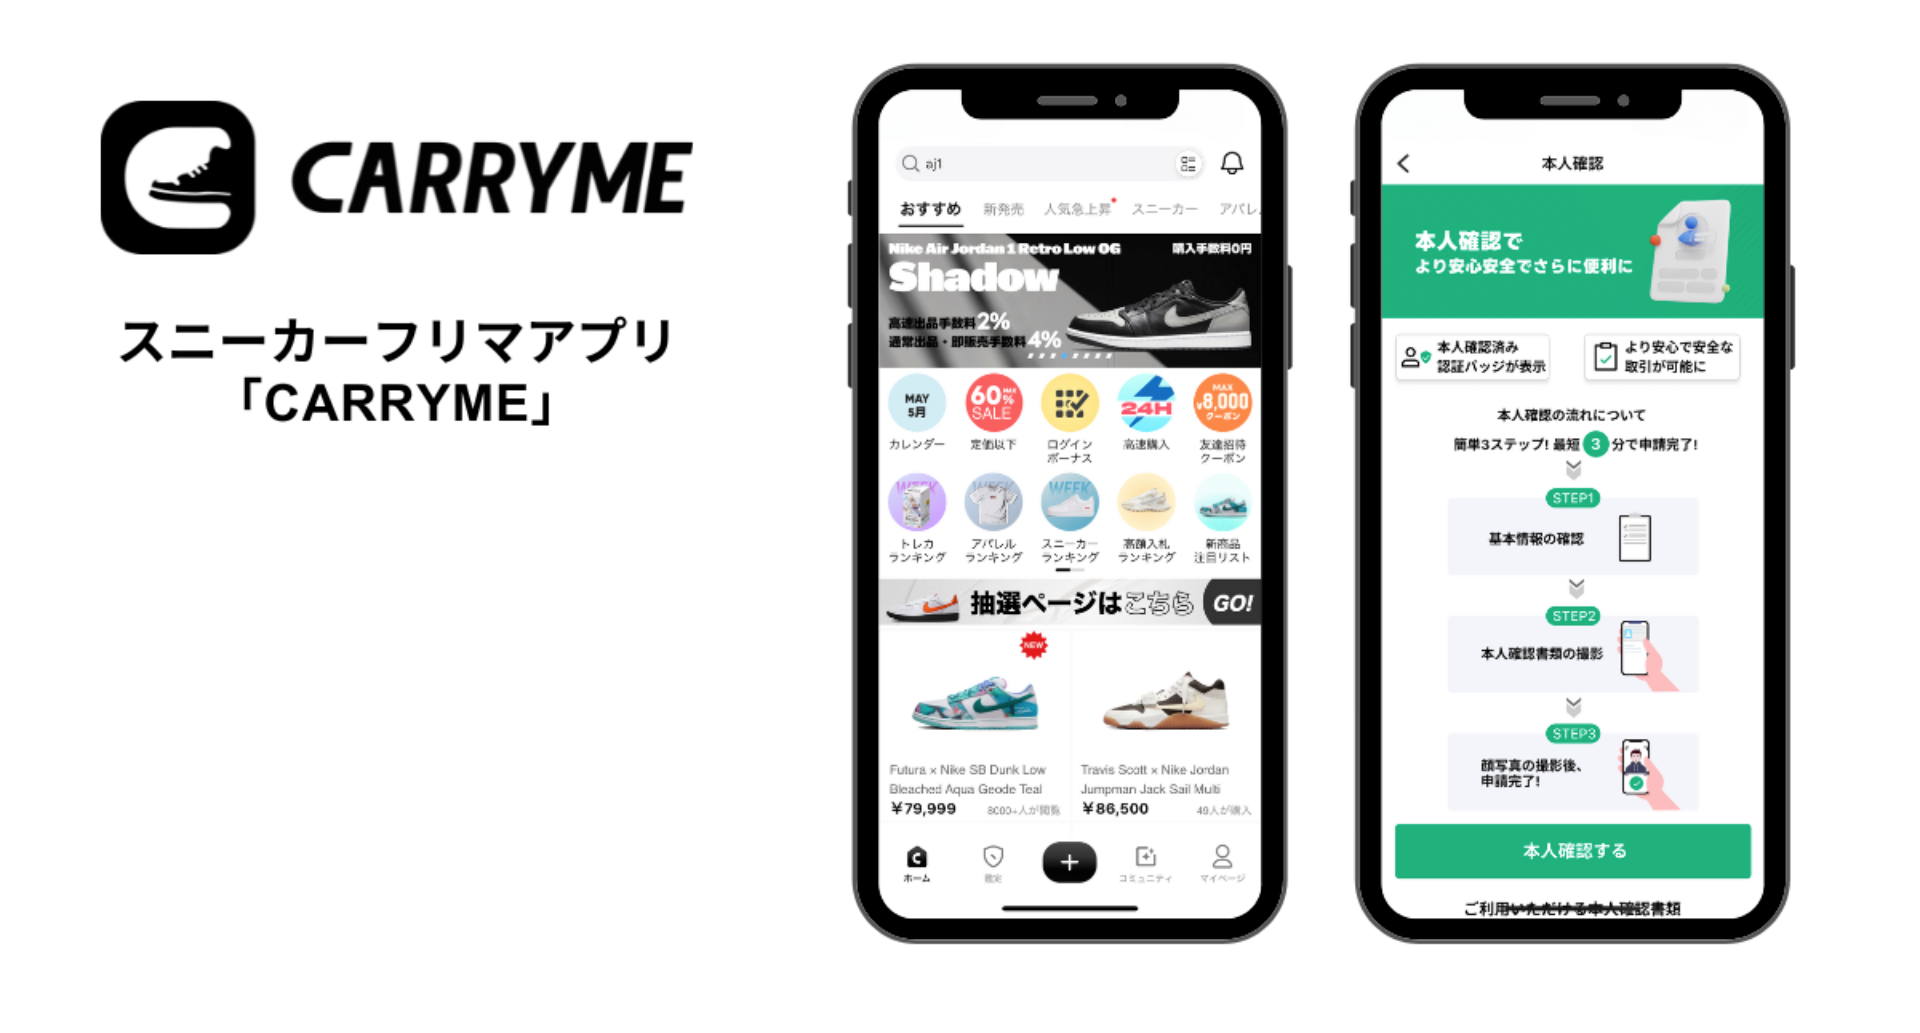 スニーカーフリマアプリ「CARRYME」が、eKYC本人確認サービス「TRUSTDOCK」を導入